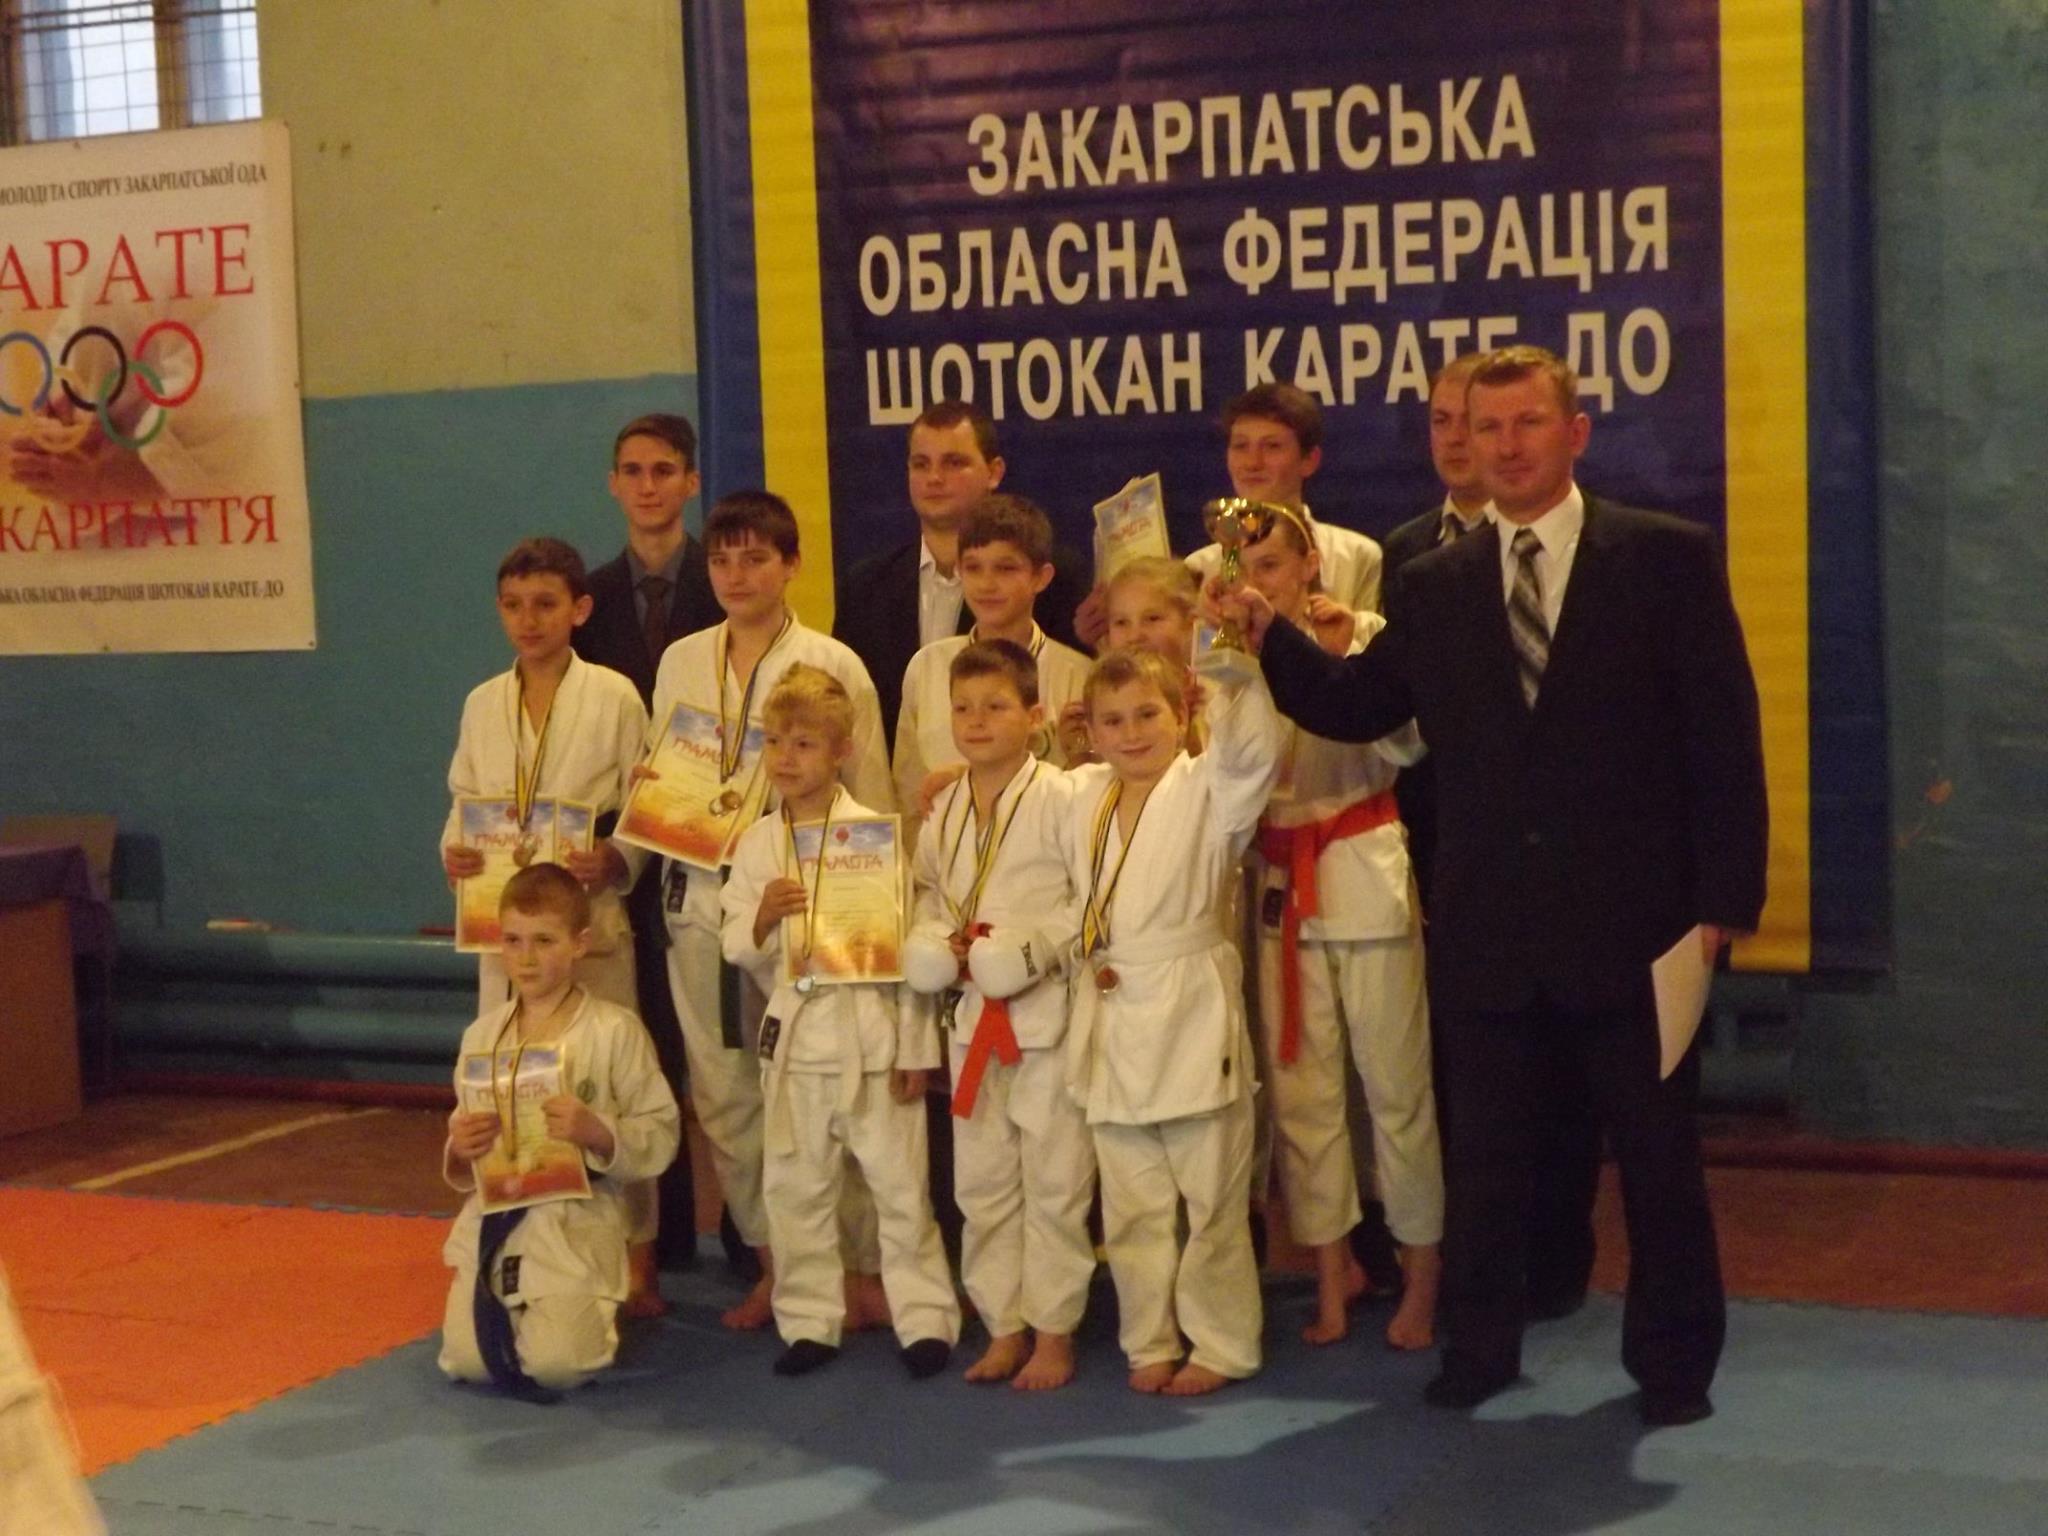 У Мукачеві відбувся відкритий чемпіонат Закарпаття з Шотокан карате-до (ФОТО)